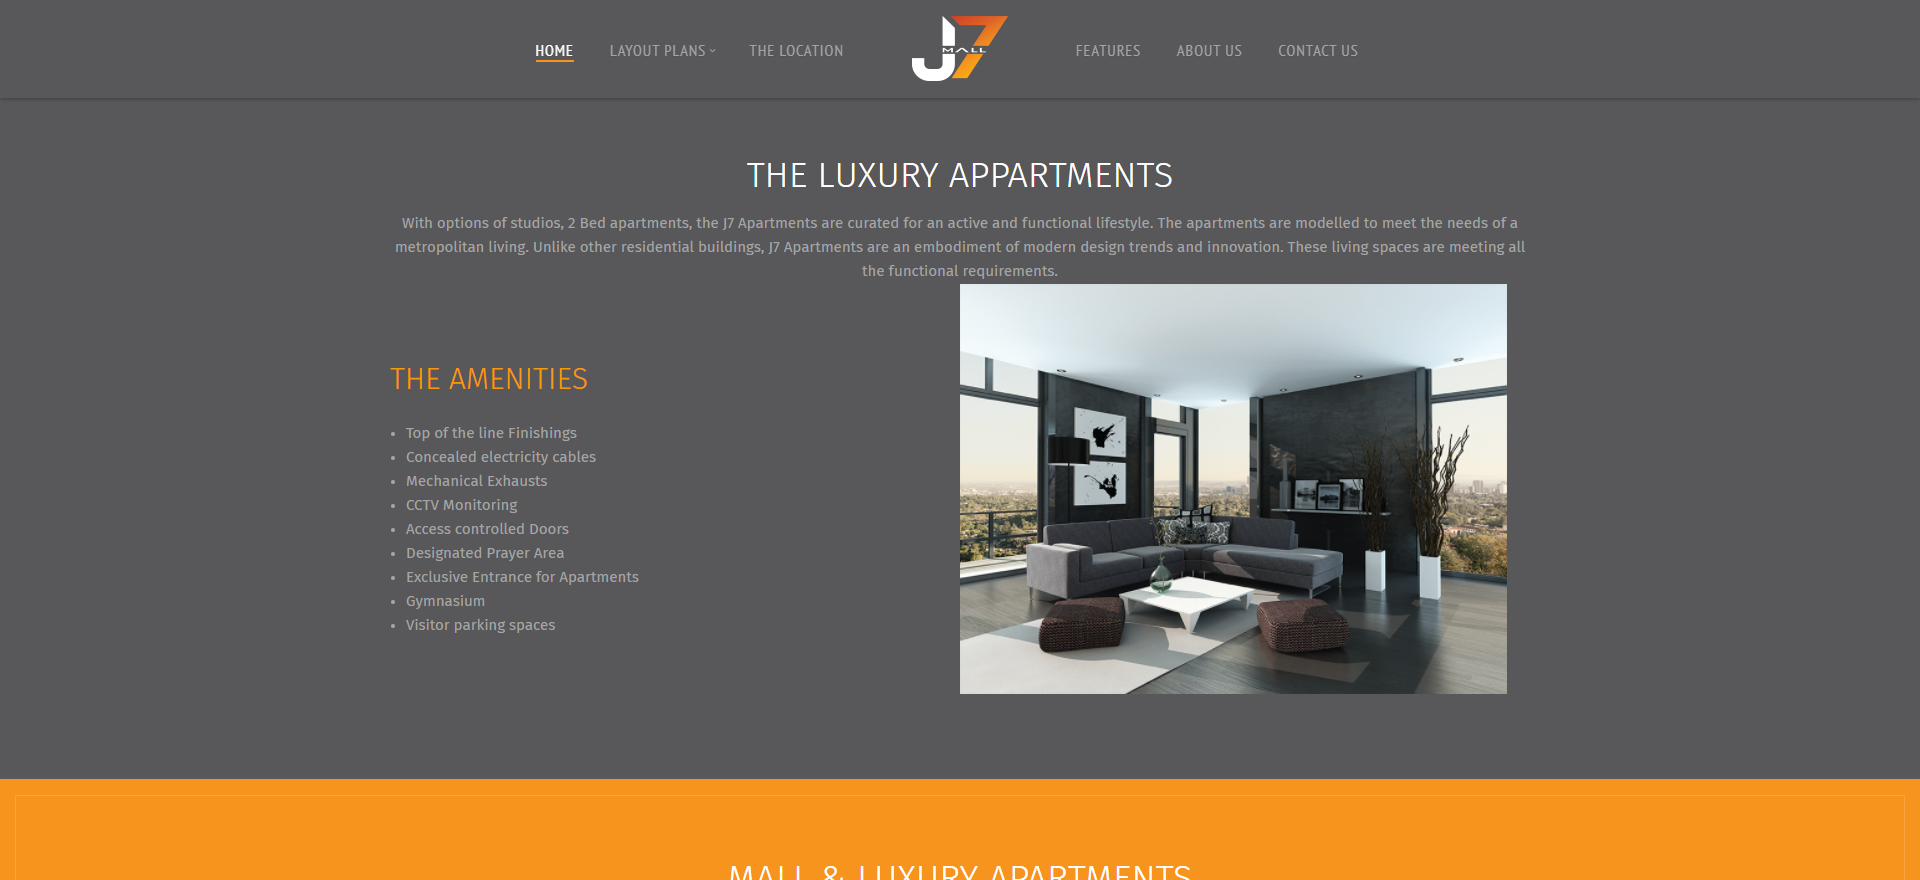 J7 Apartments